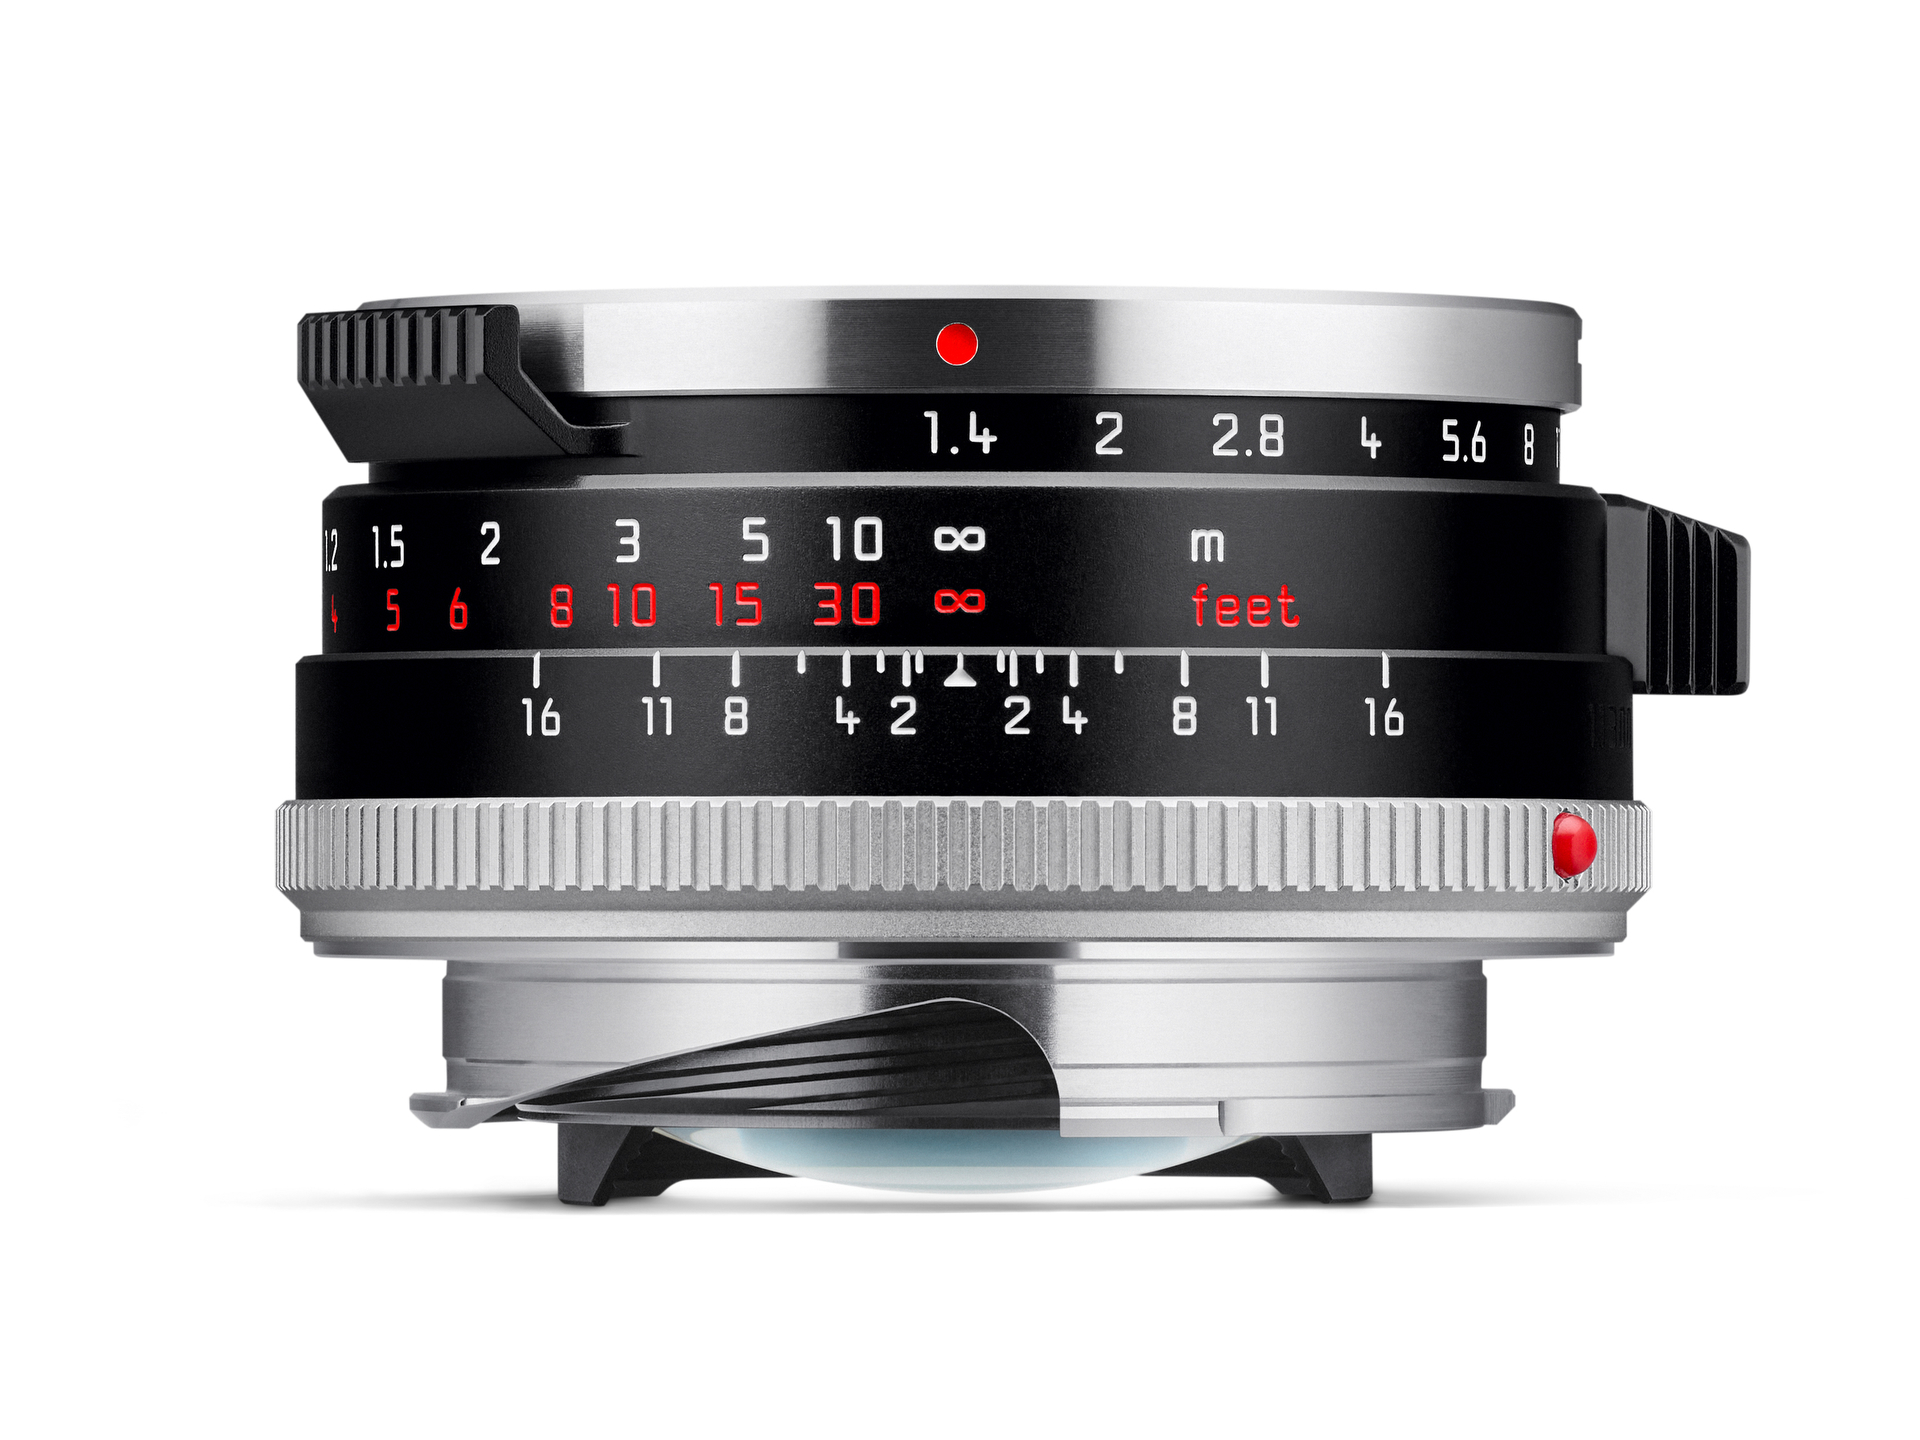 ライカ「ズミルックスM f1.4/35mm 」に、最初期製品がベースの特別限定 